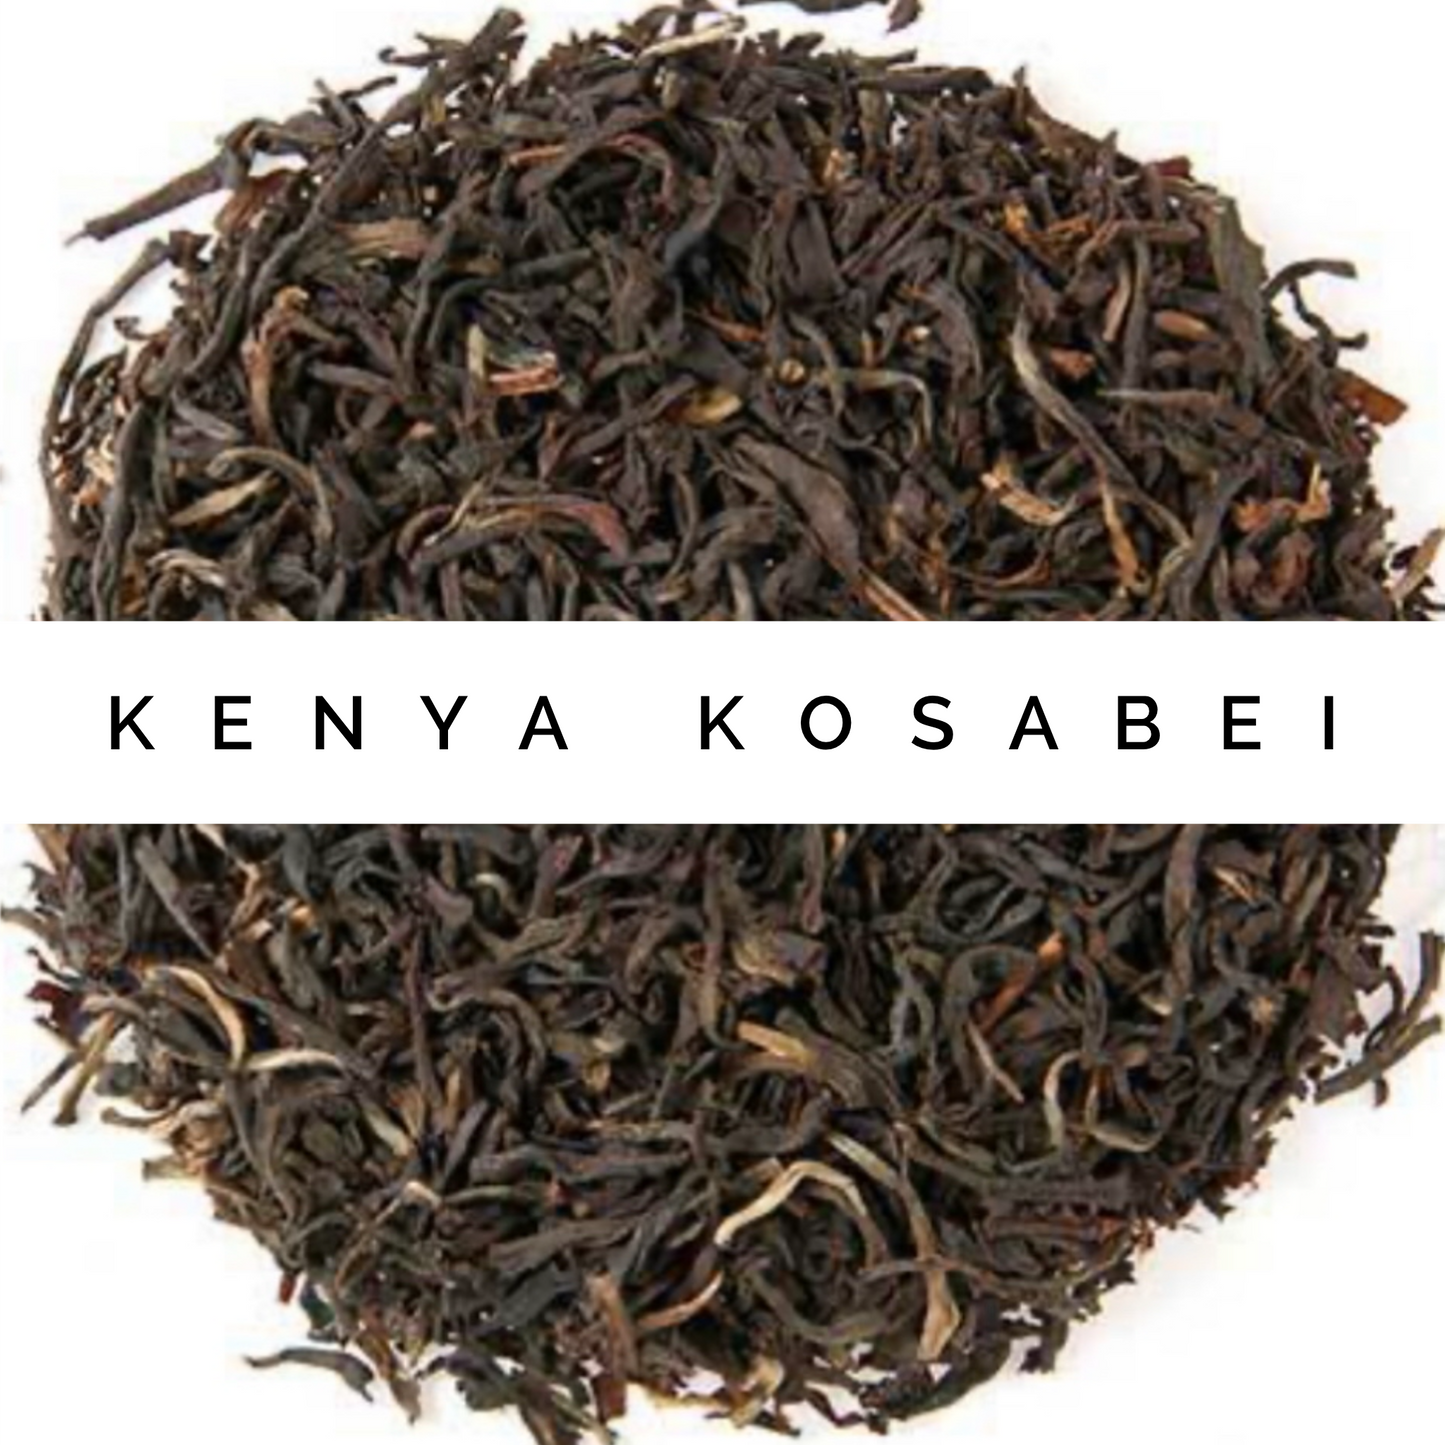 Kenya Kosabei